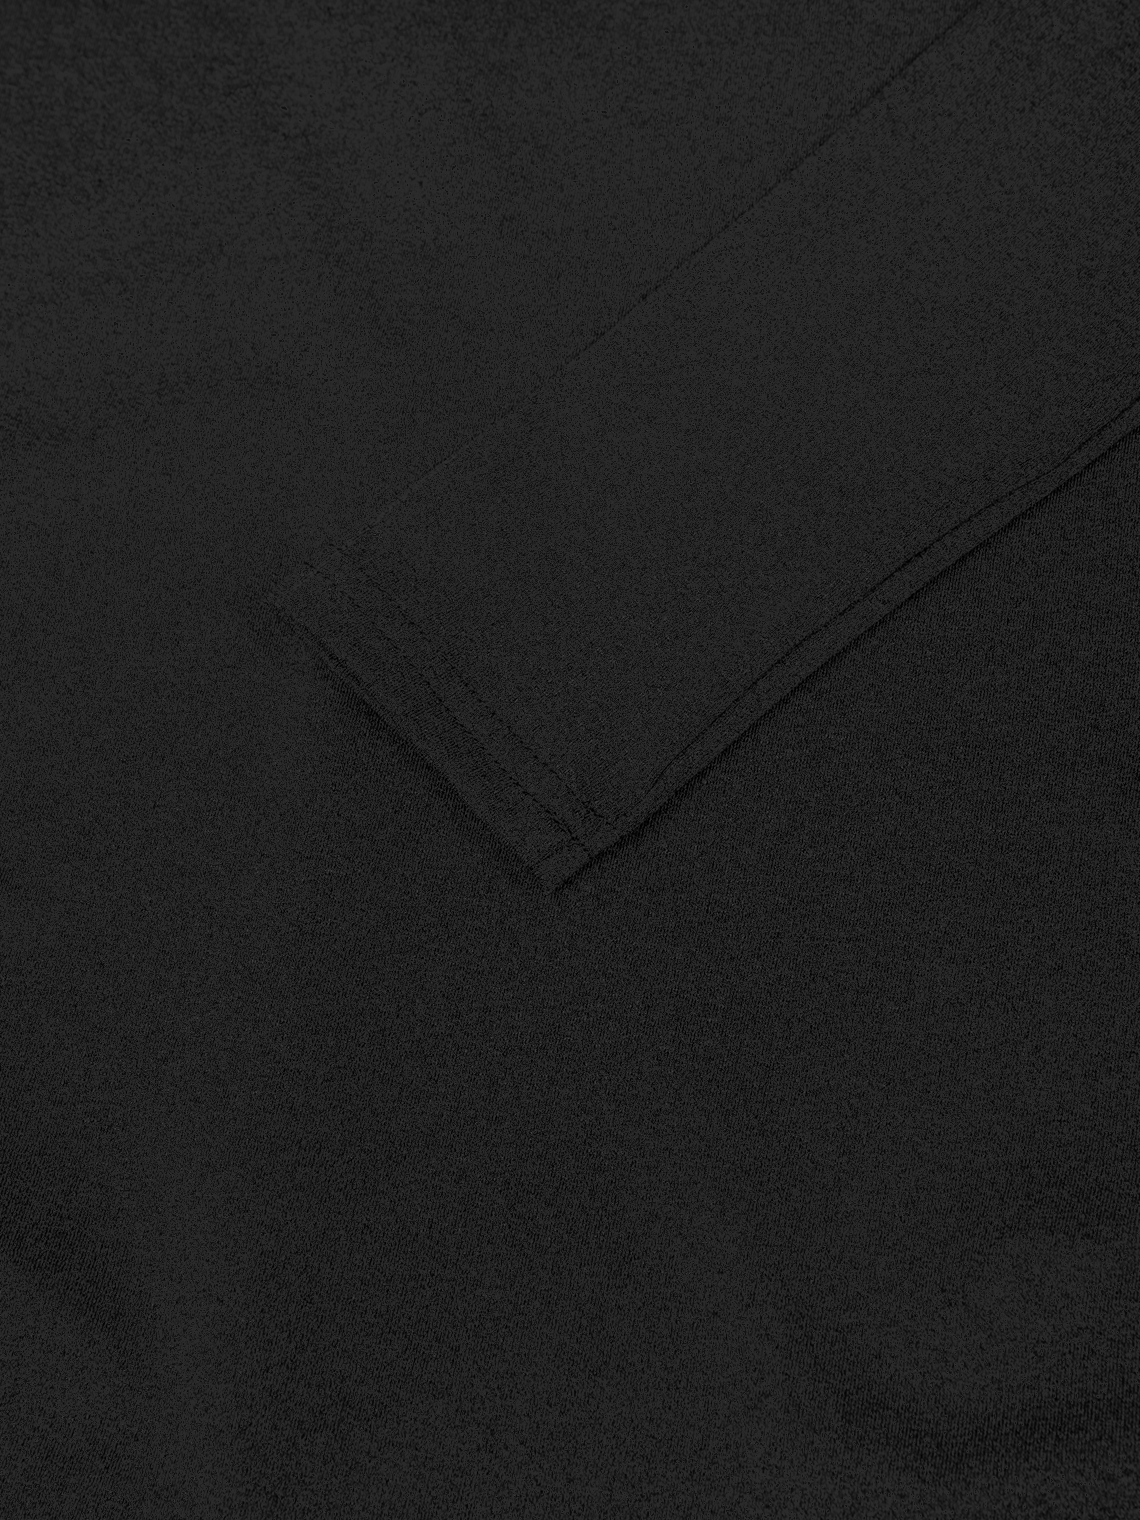 Strapless Plain Long Sleeve Jumpsuit